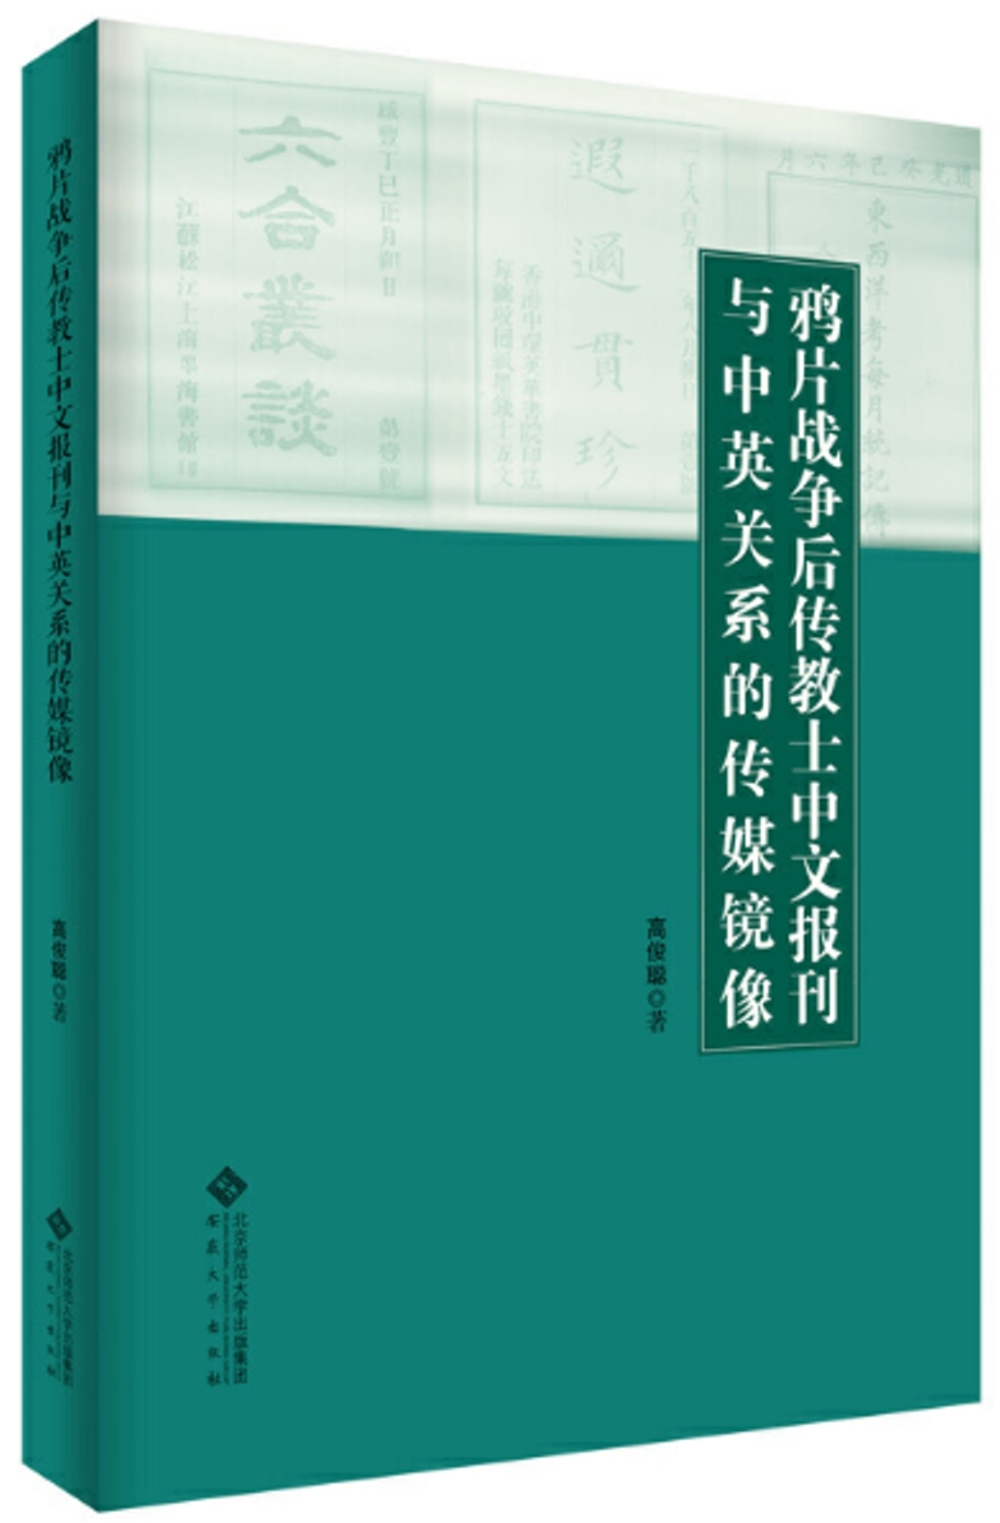 鴉片戰爭後傳教士中文報刊與中英關係的傳媒鏡像